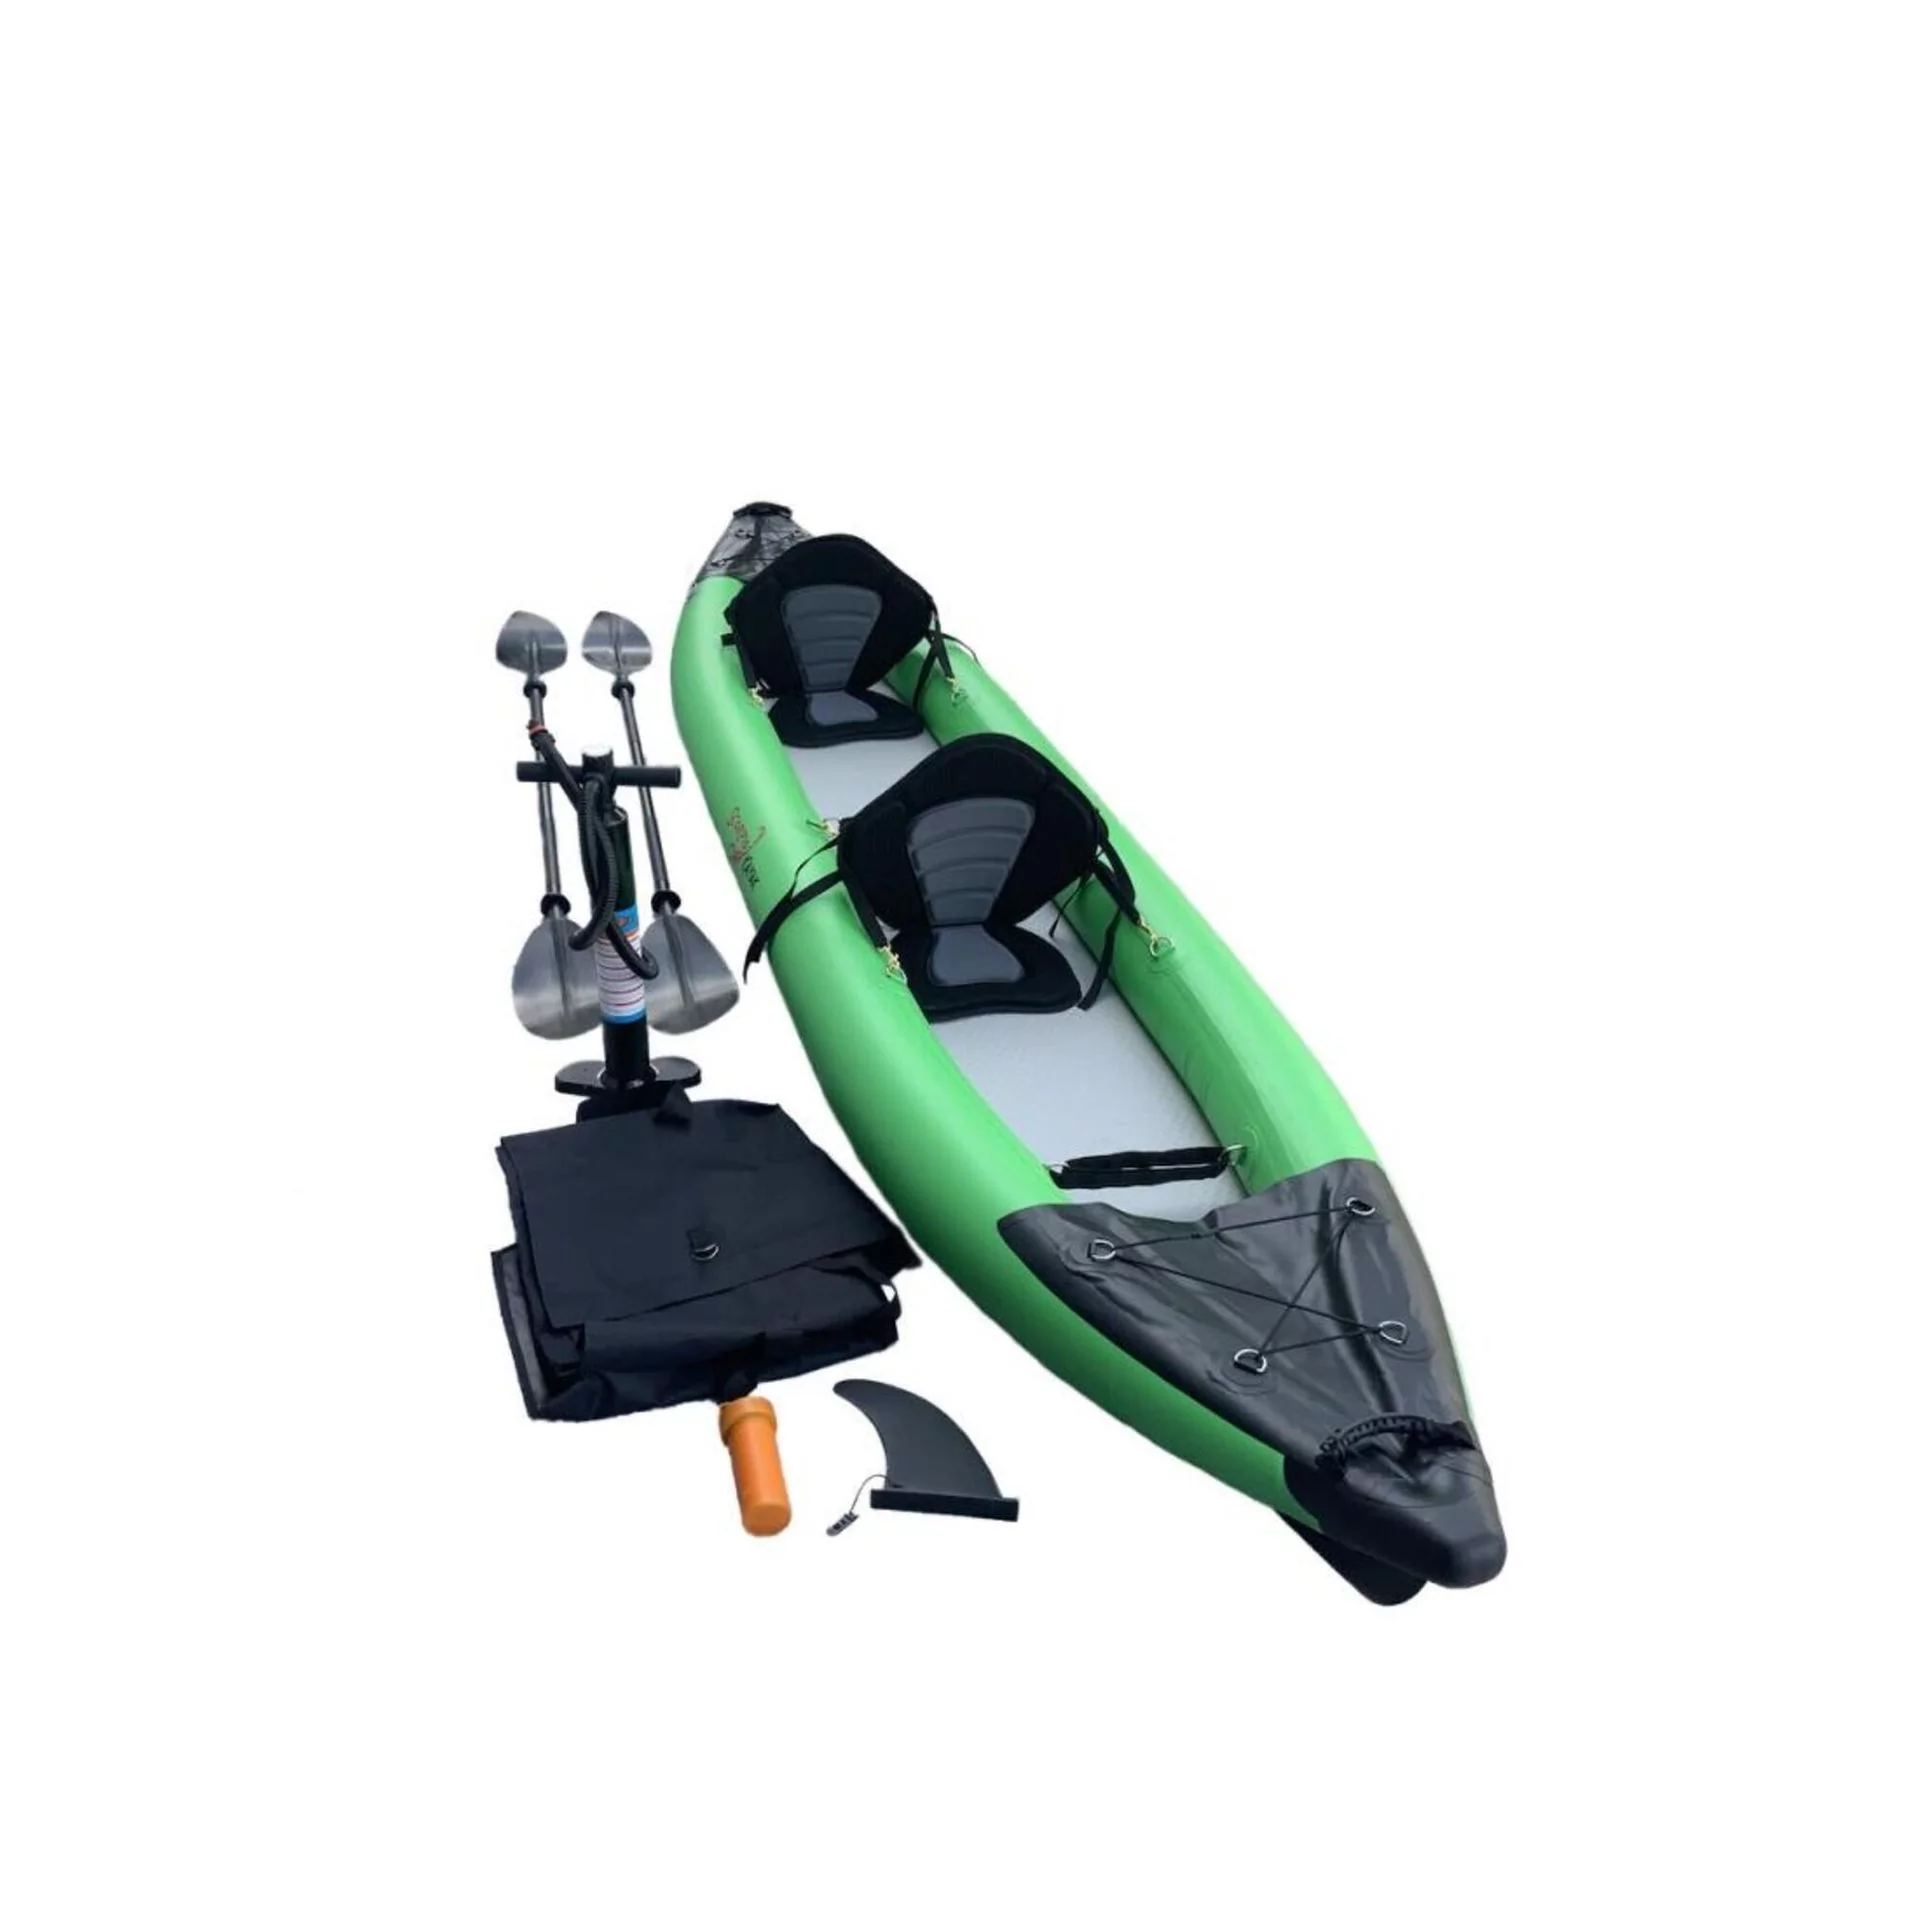 Kajak Pneumatyczny Do Pływania Scorpio Kayak Hybrid Ii Zestaw